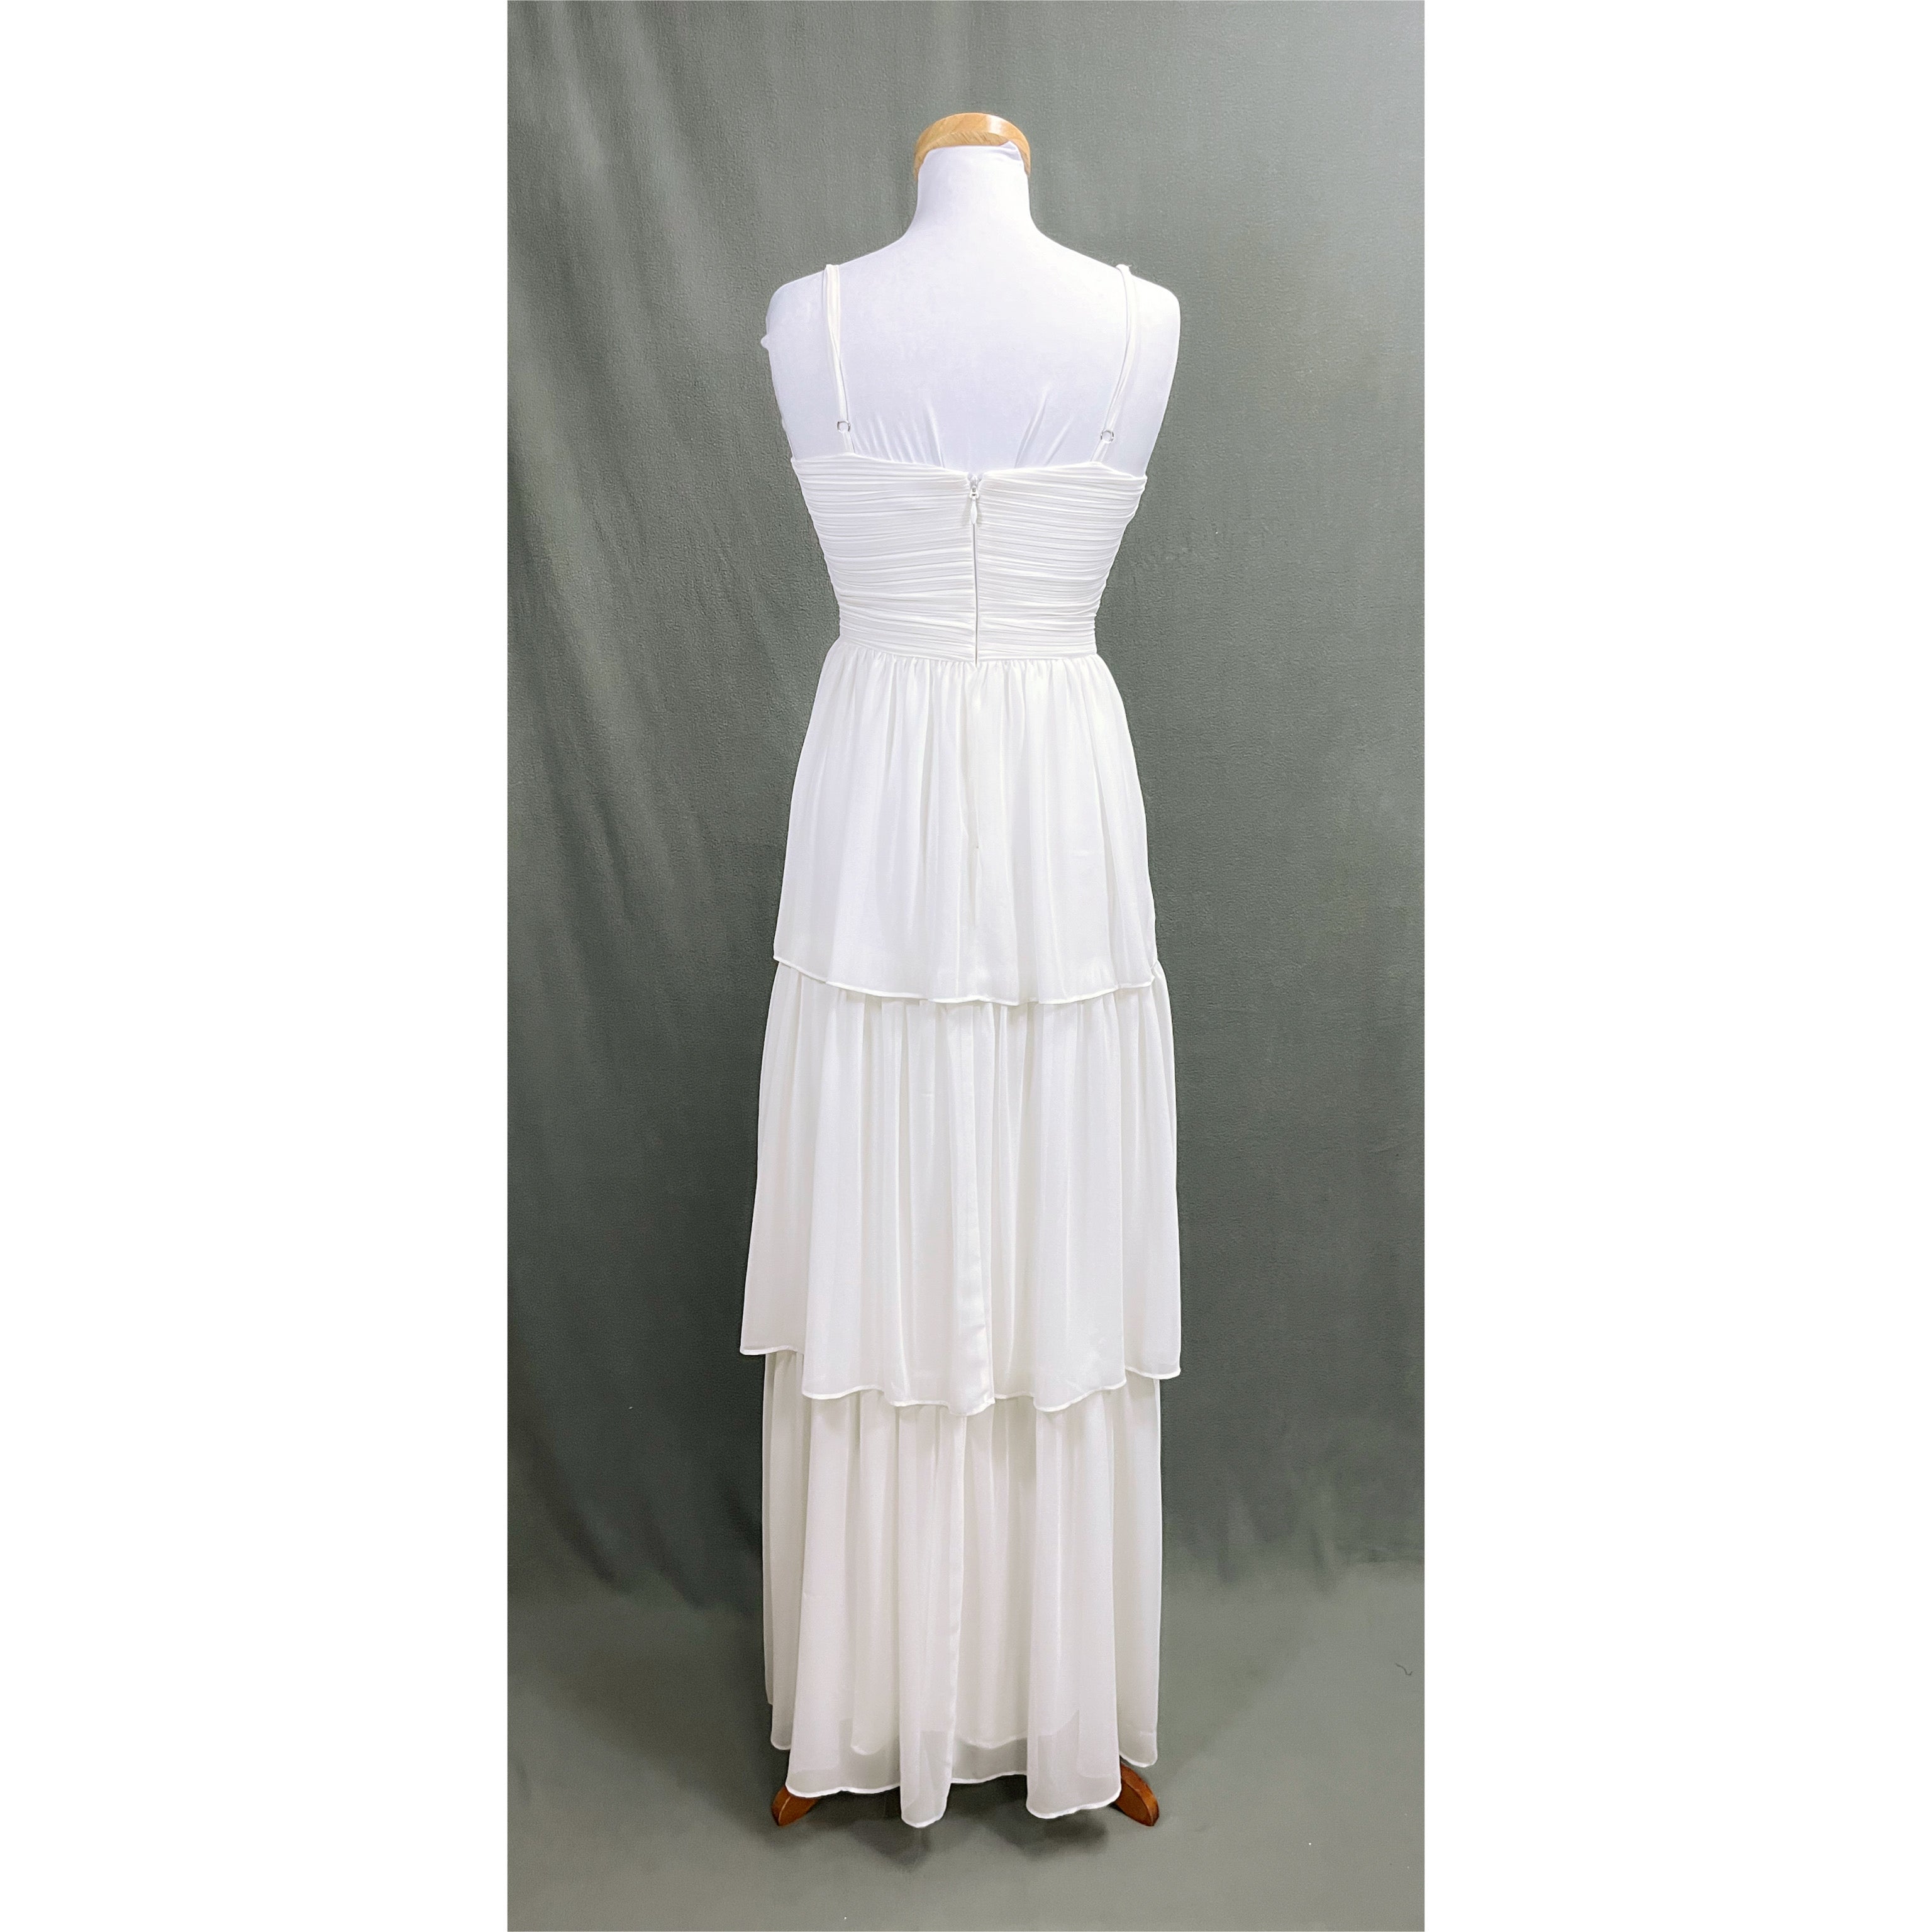 Aqua white dress, size 2